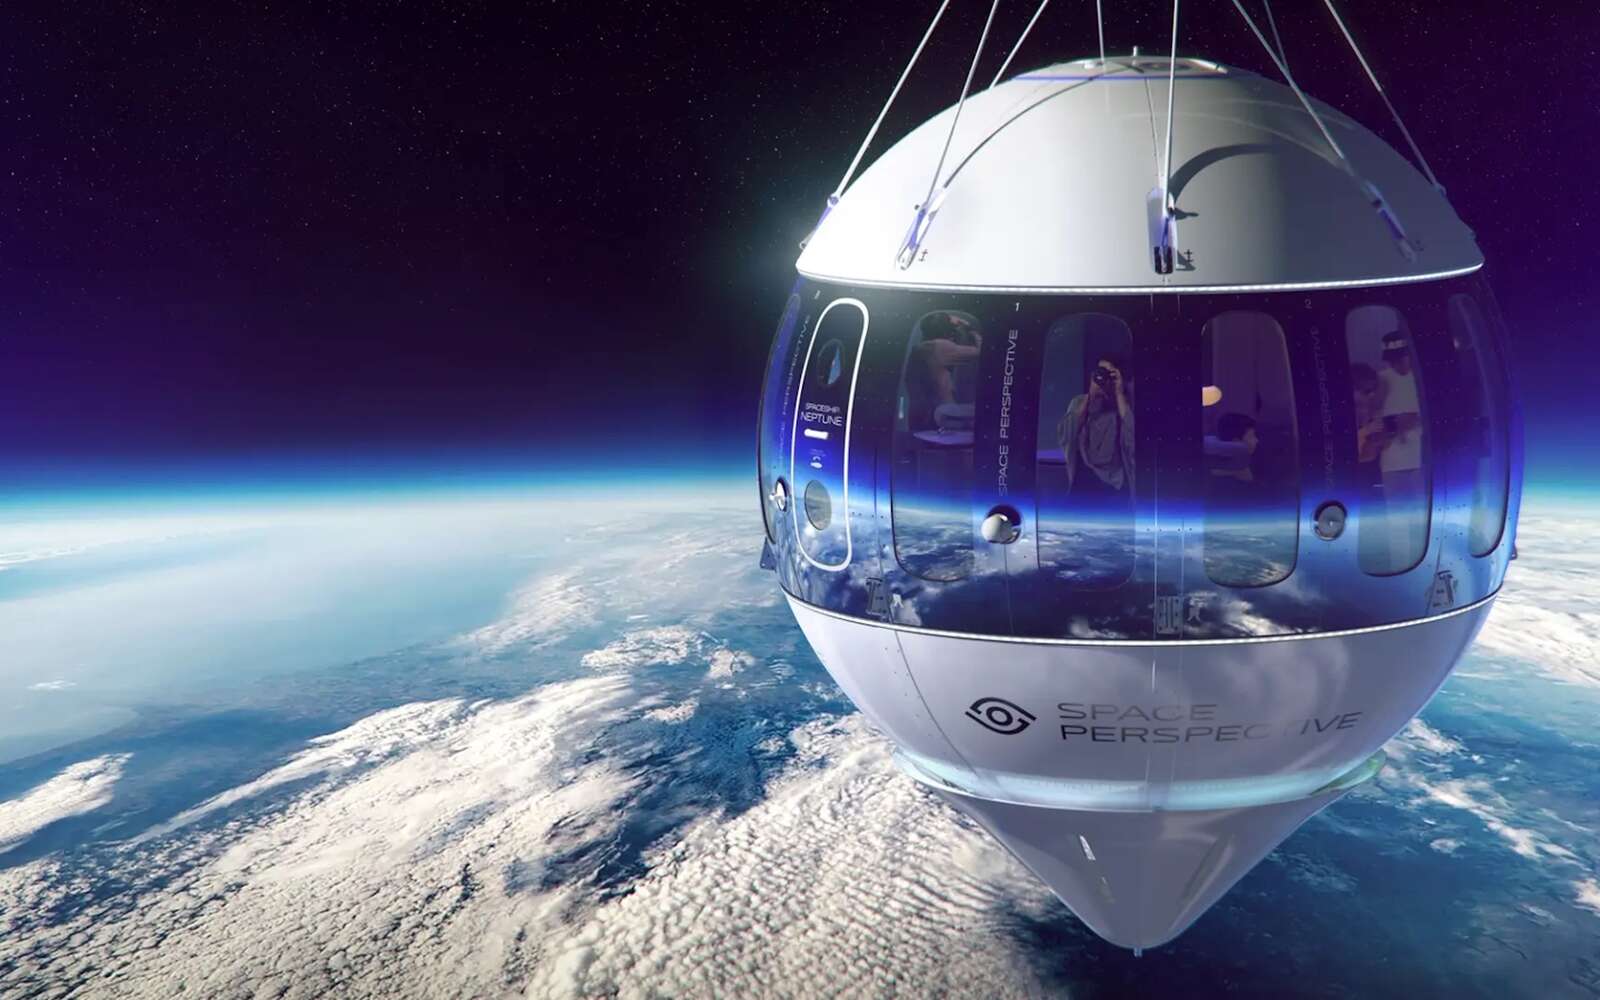 Une startup dévoile sa capsule pour des voyages spectaculaires et luxueux aux portes de l'espace